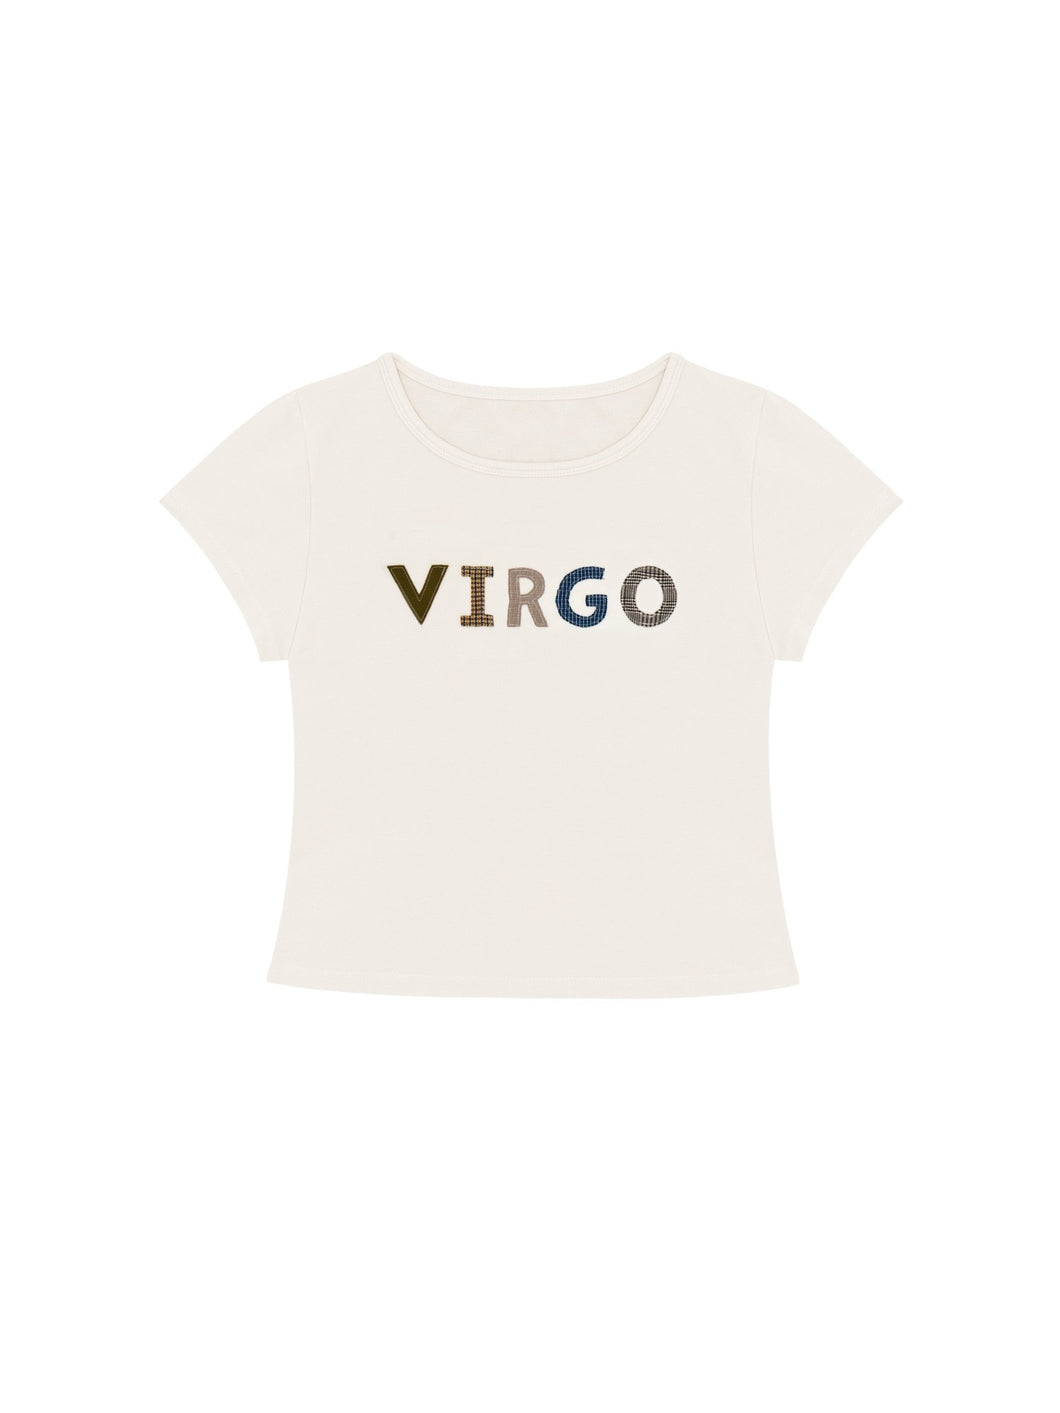 VIRGO Baby Tee